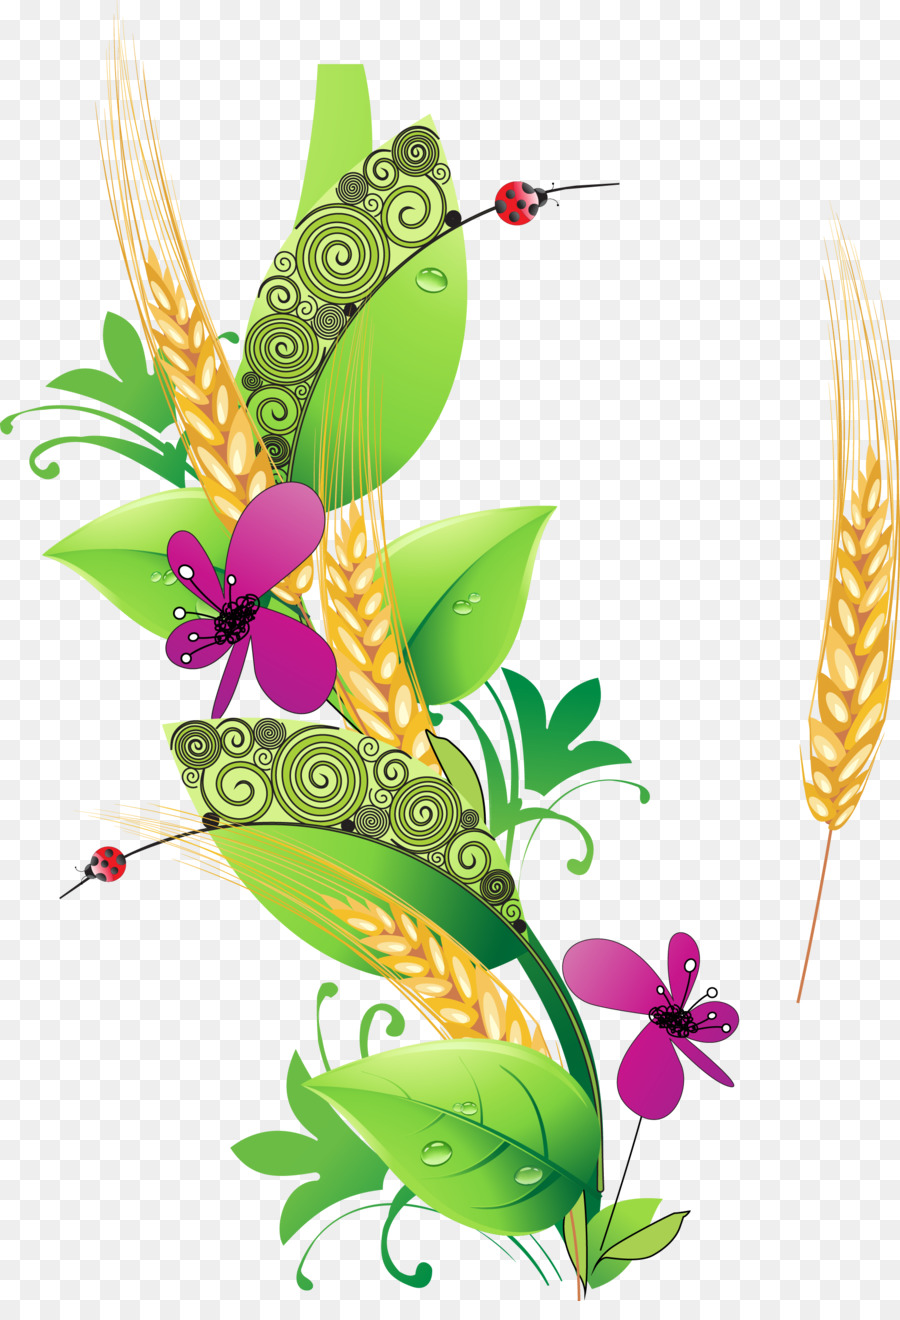 Telugu letteratura Quotazione all'Ingrosso Scarpe-Golden Road Trading Tamil - creative grano decorazione vegetale vettoriale